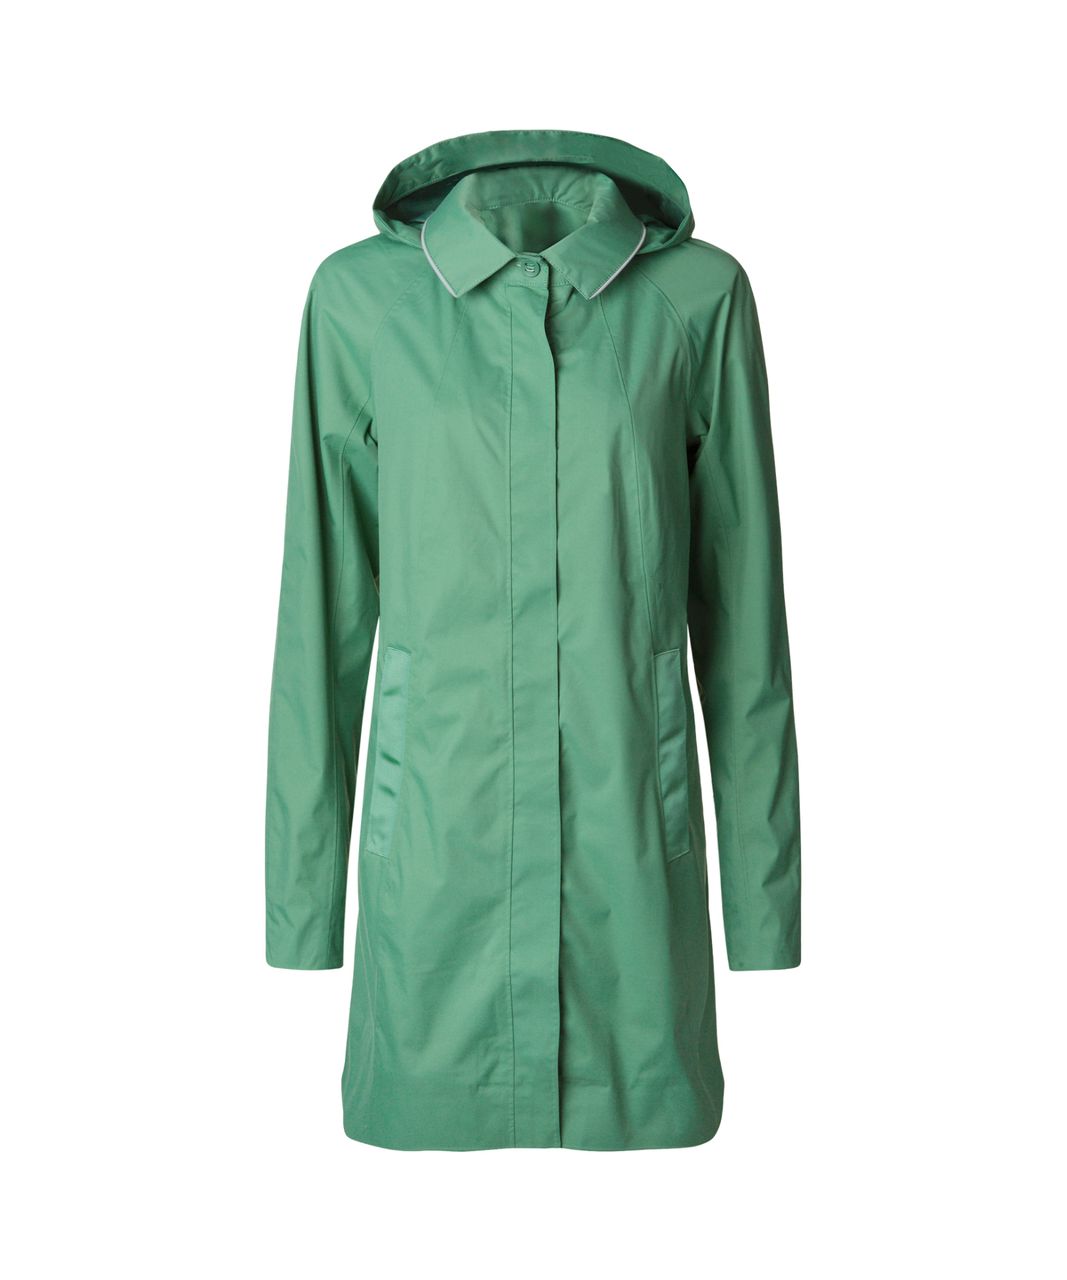 Lululemon Rain On Jacket - Vintage Green